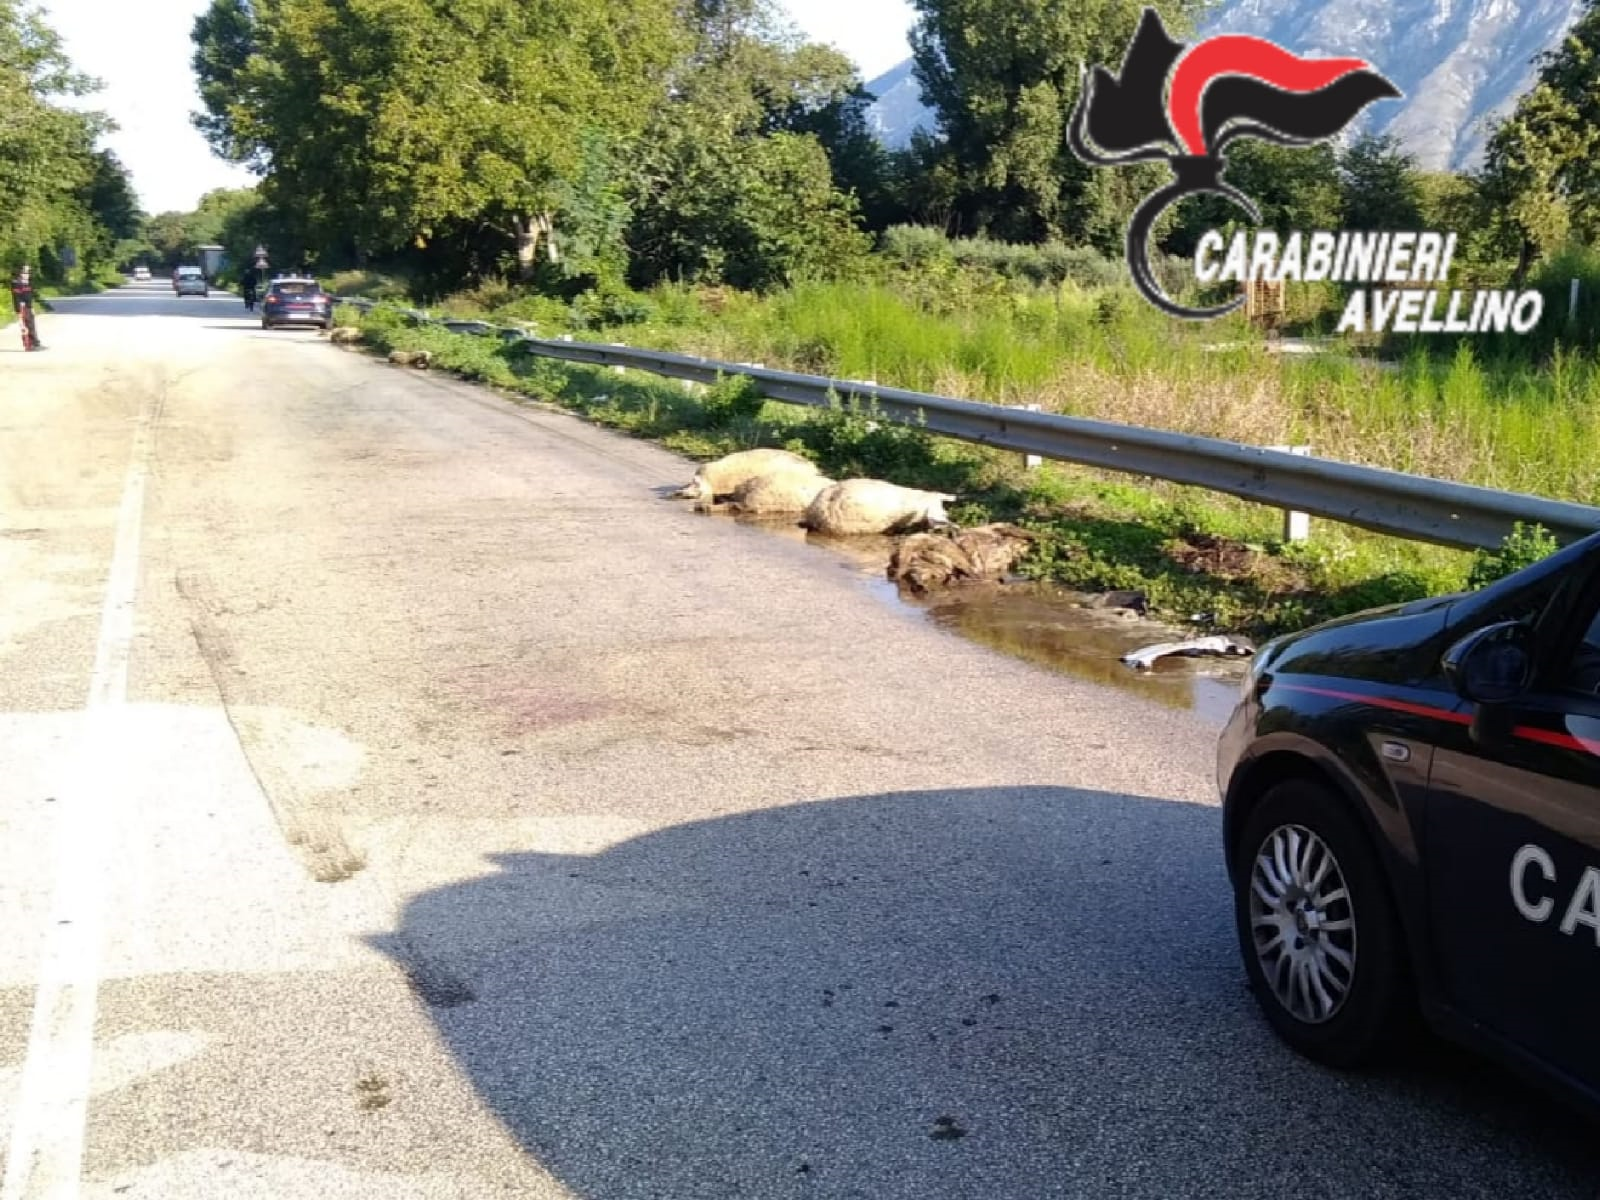 Cervinara| Gregge abbandonato sulla statale Appia investito da un’auto